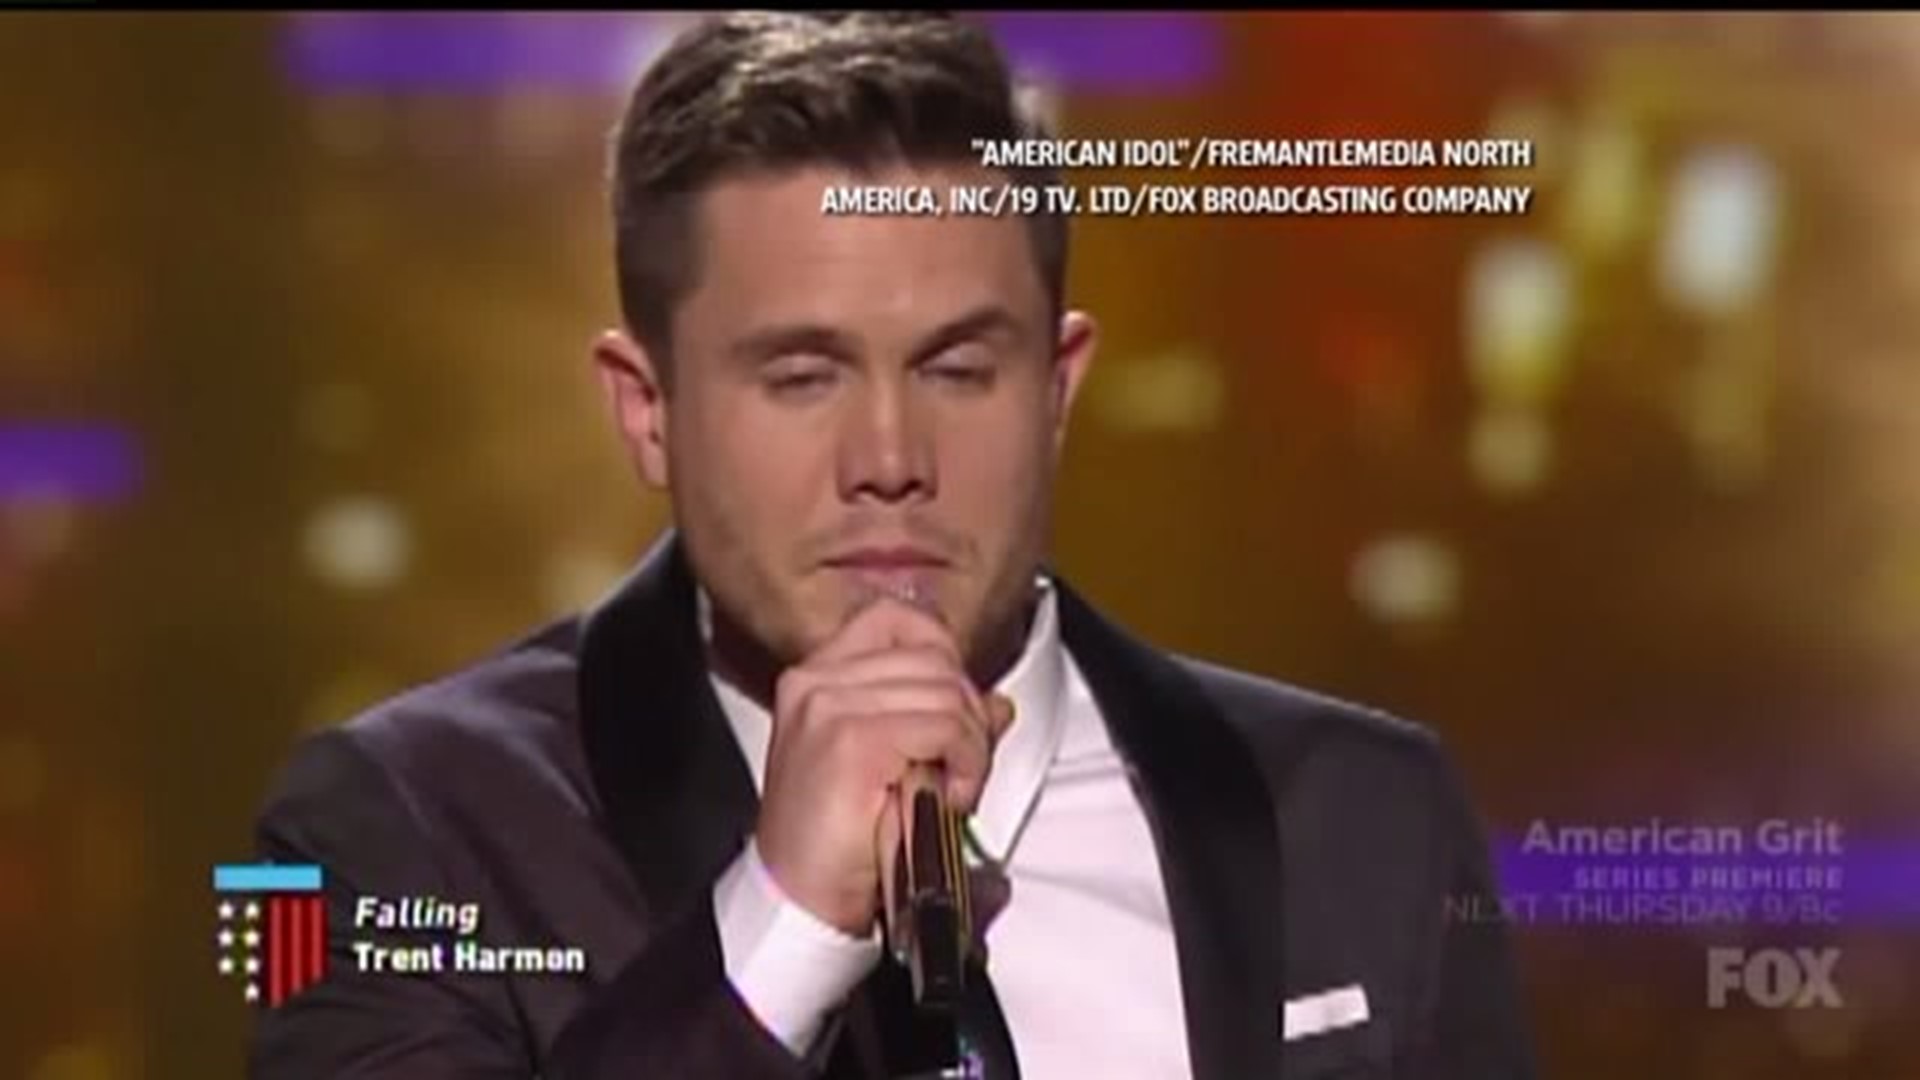 Ask Evan: What happened to the last winner of American Idol?